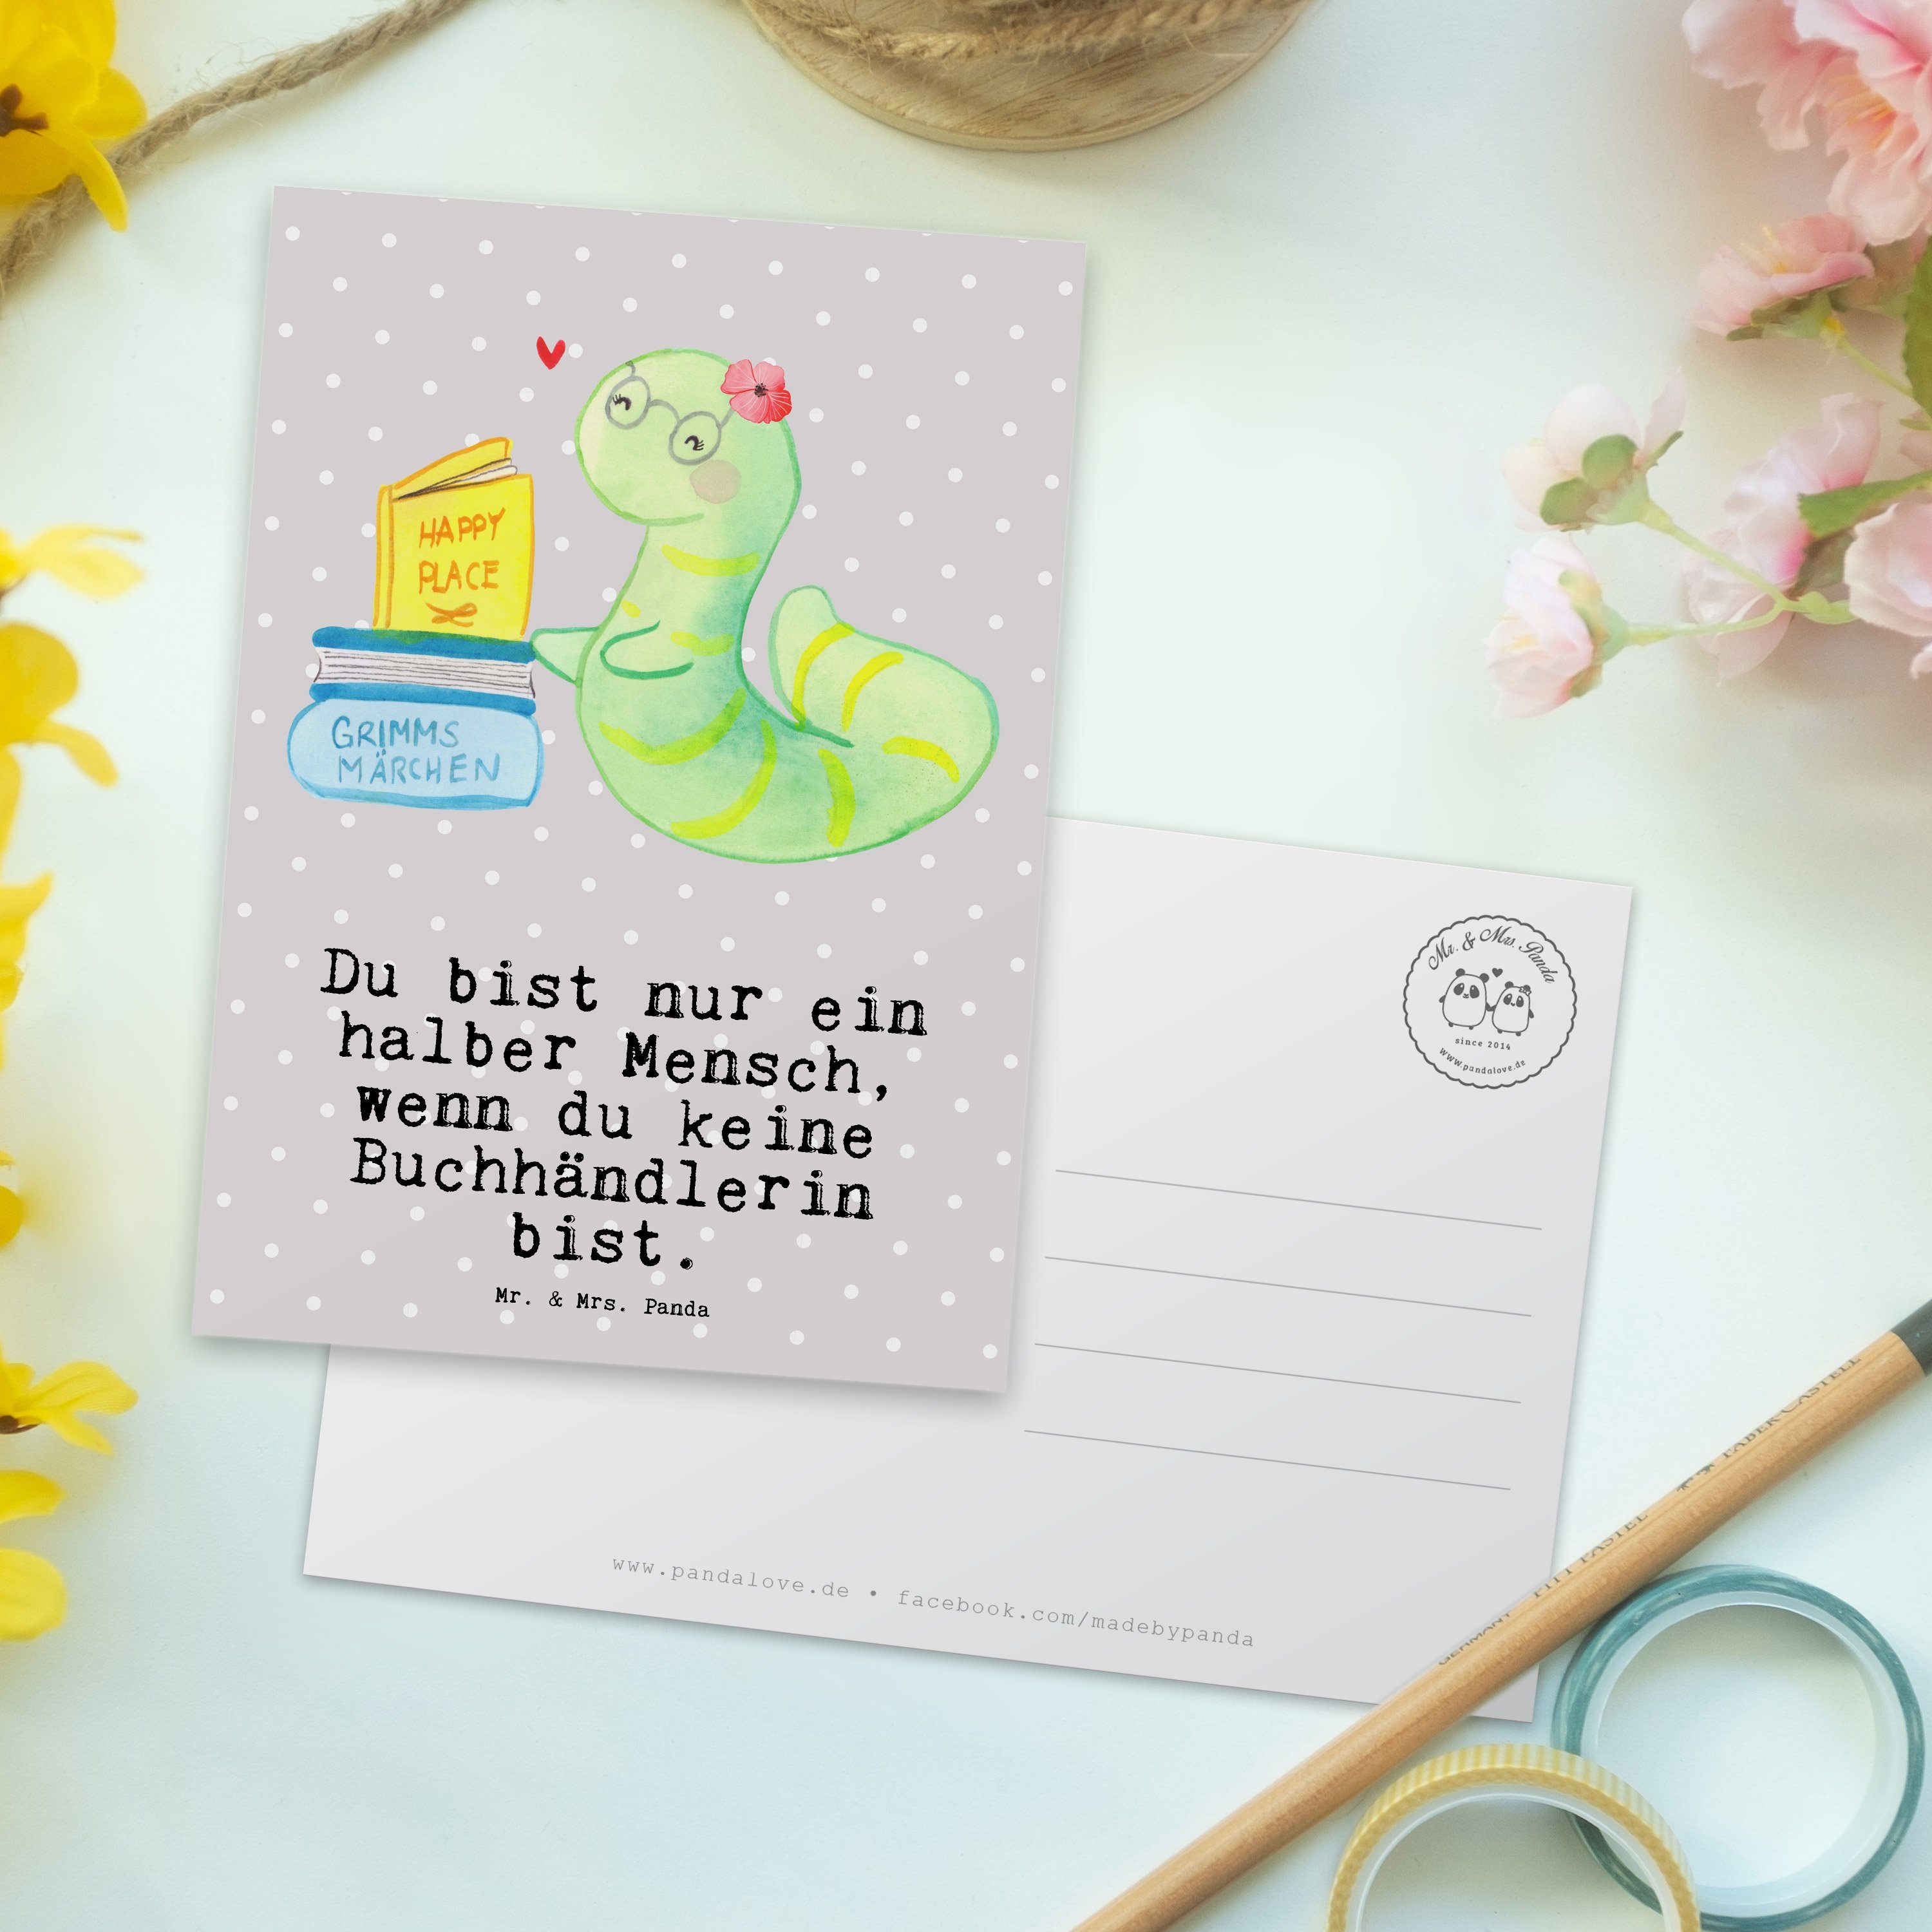 Grau Bibliot Panda Bücherwurm, Buchhändlerin - mit Geschenk, Herz & Mrs. - Postkarte Pastell Mr.